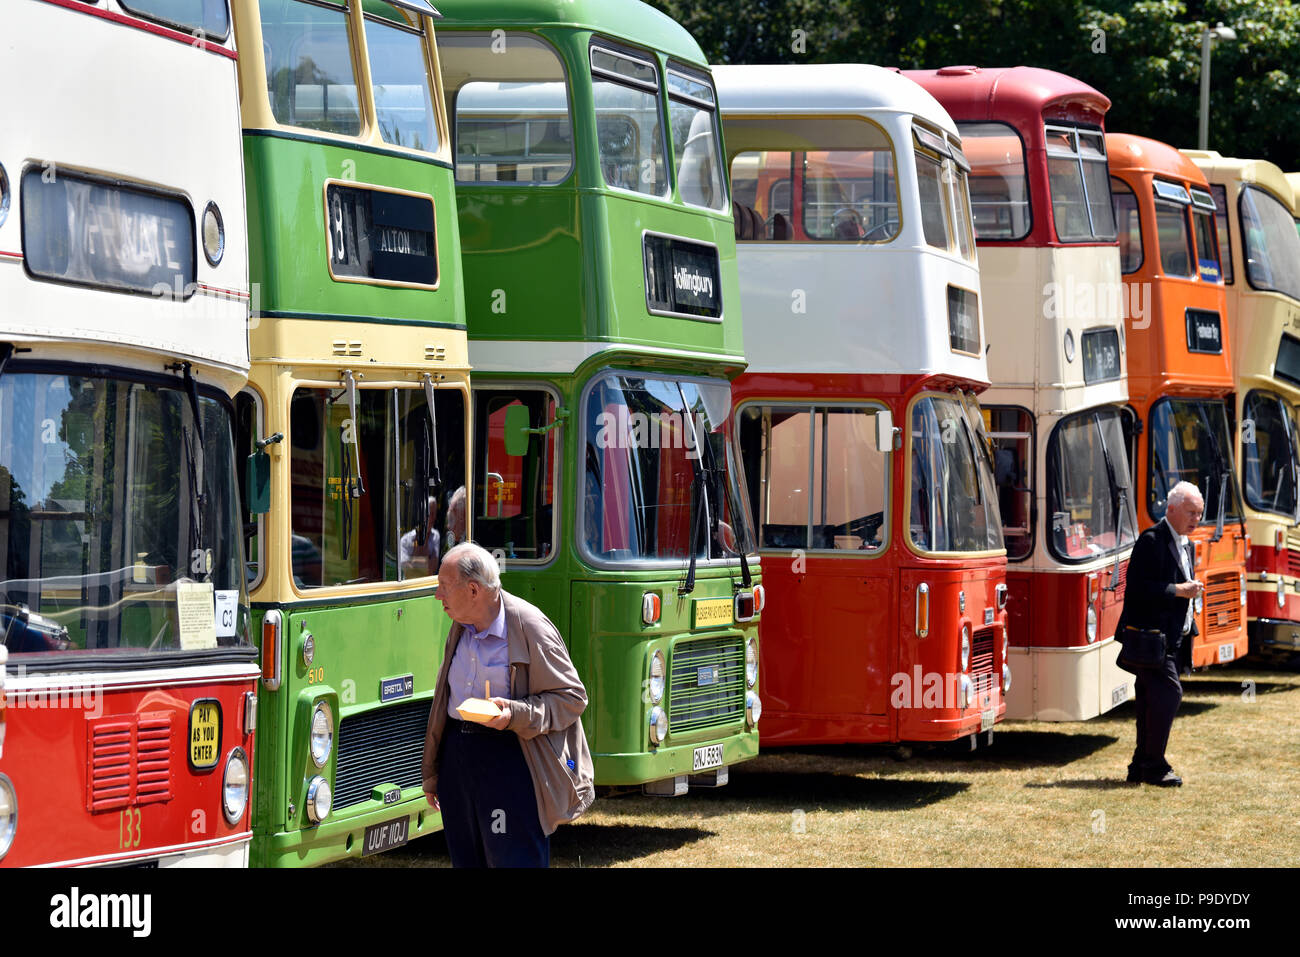 Visitatori un bus rally, Alton, HAMPSHIRE, Regno Unito. Domenica 15 luglio 2018. Foto Stock